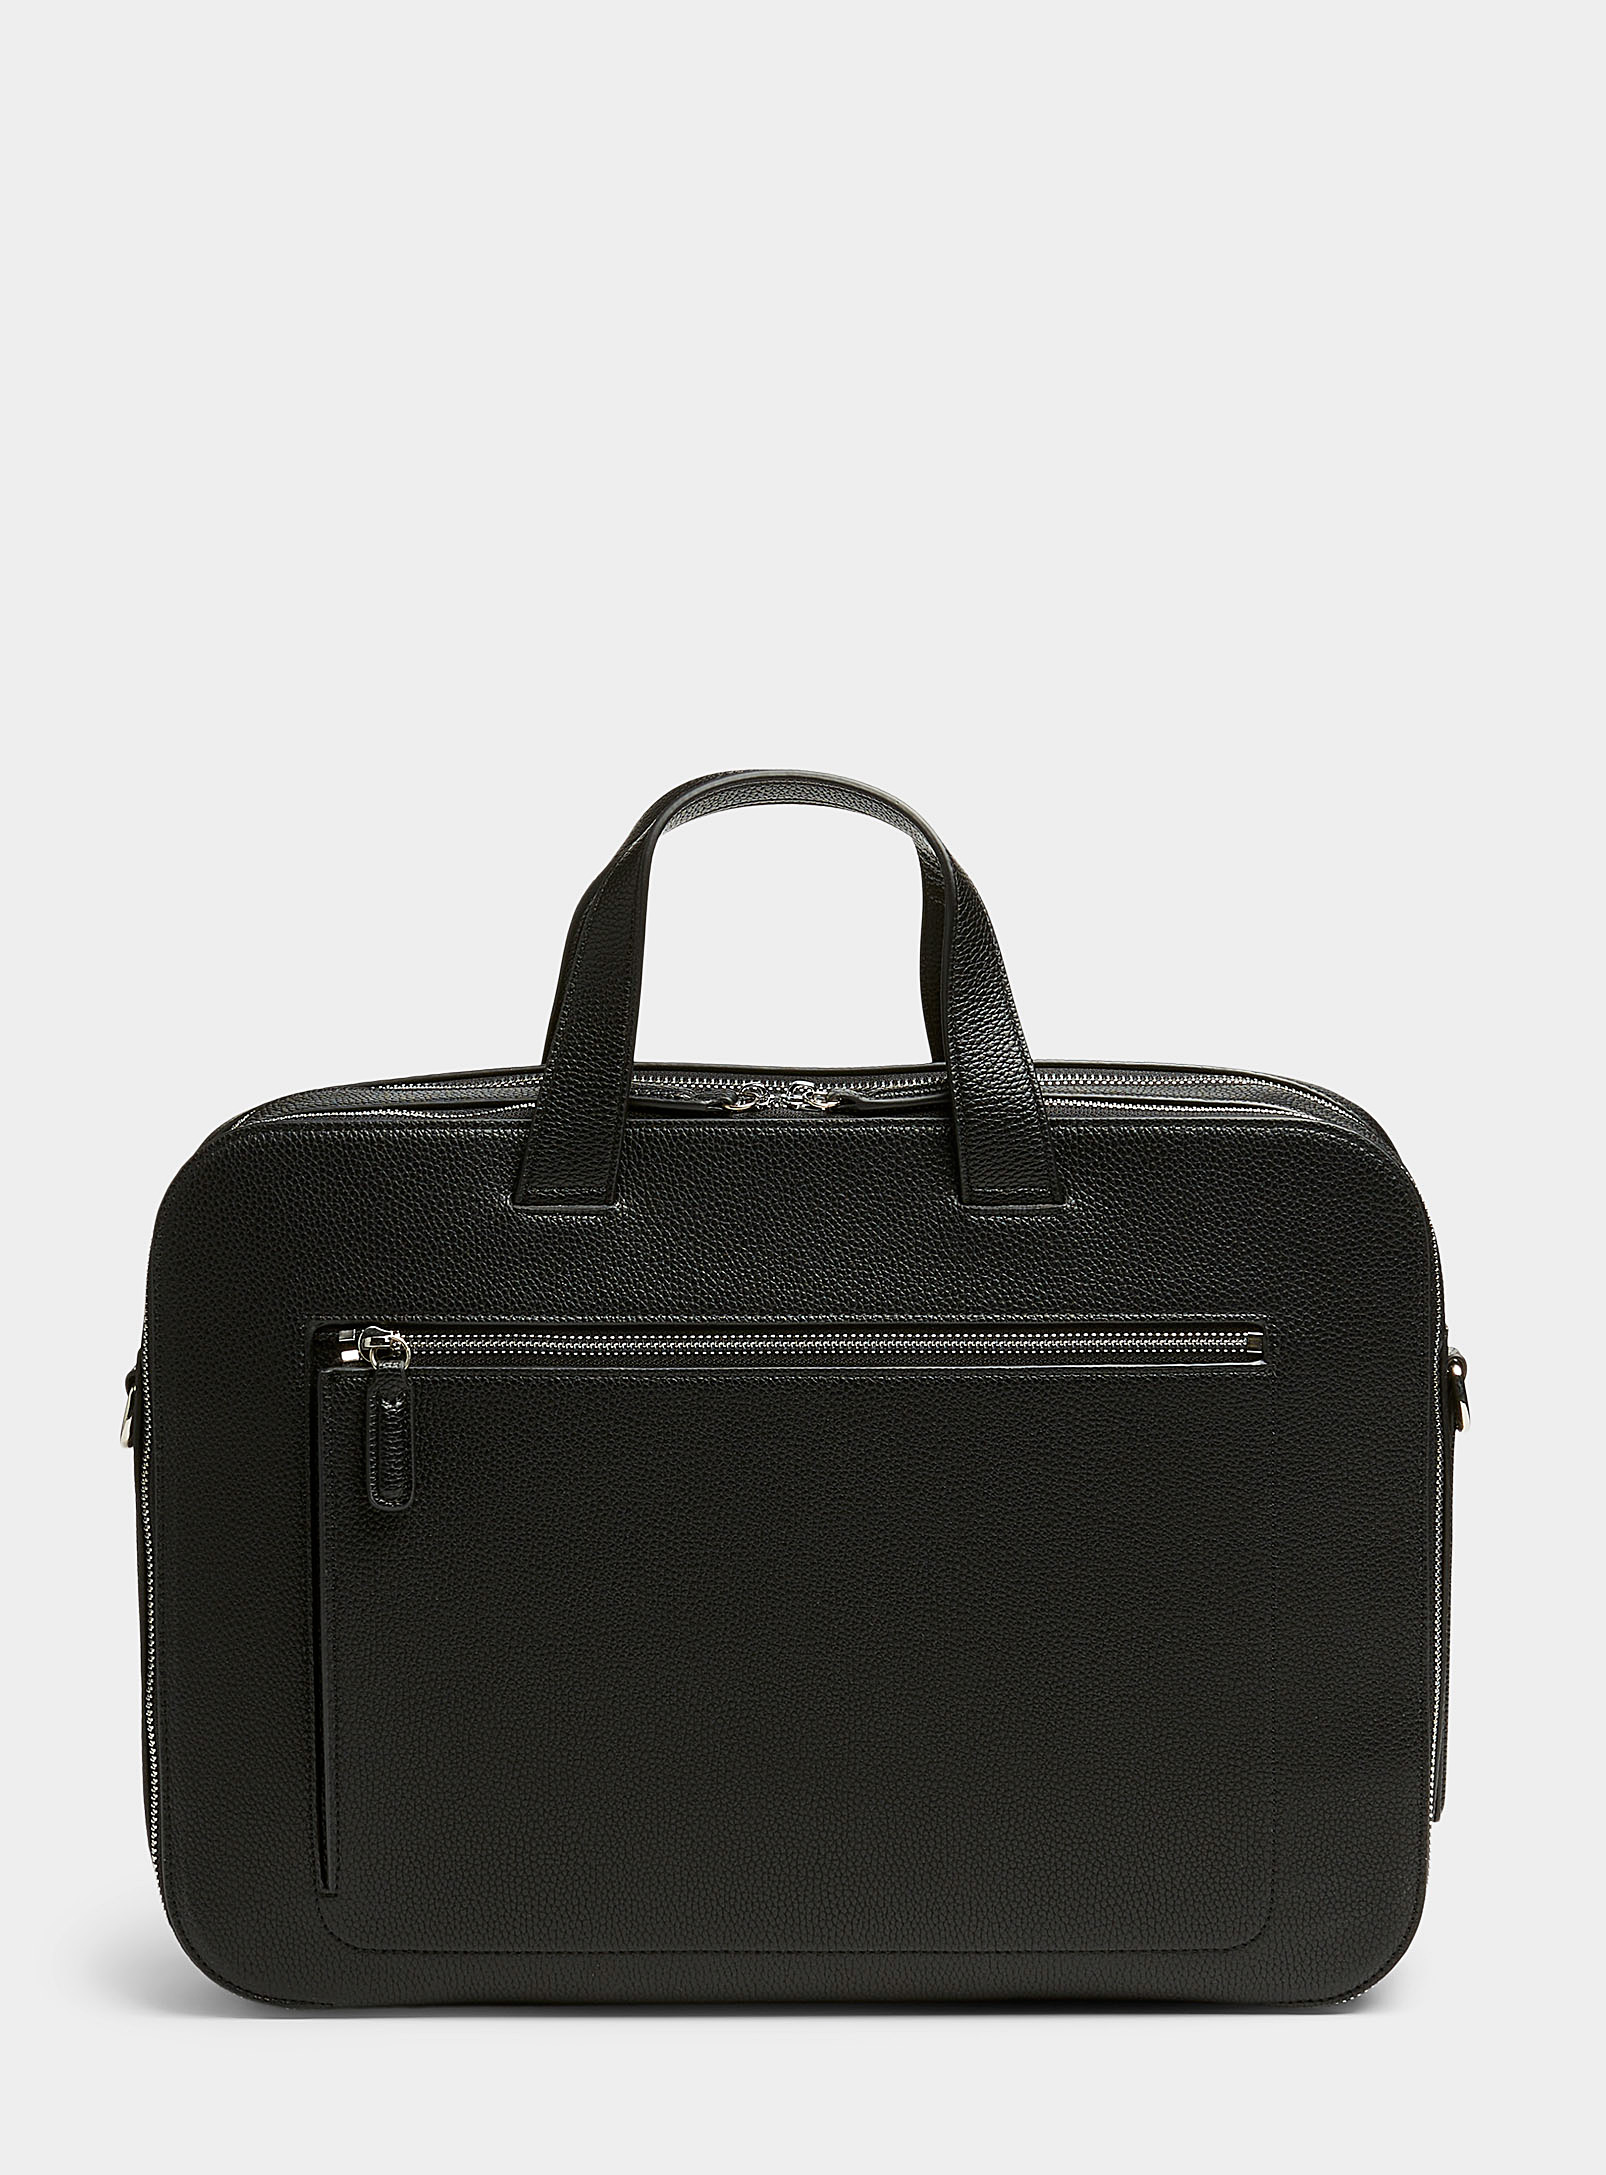 Le 31 - Men's Pebbled leather briefcase